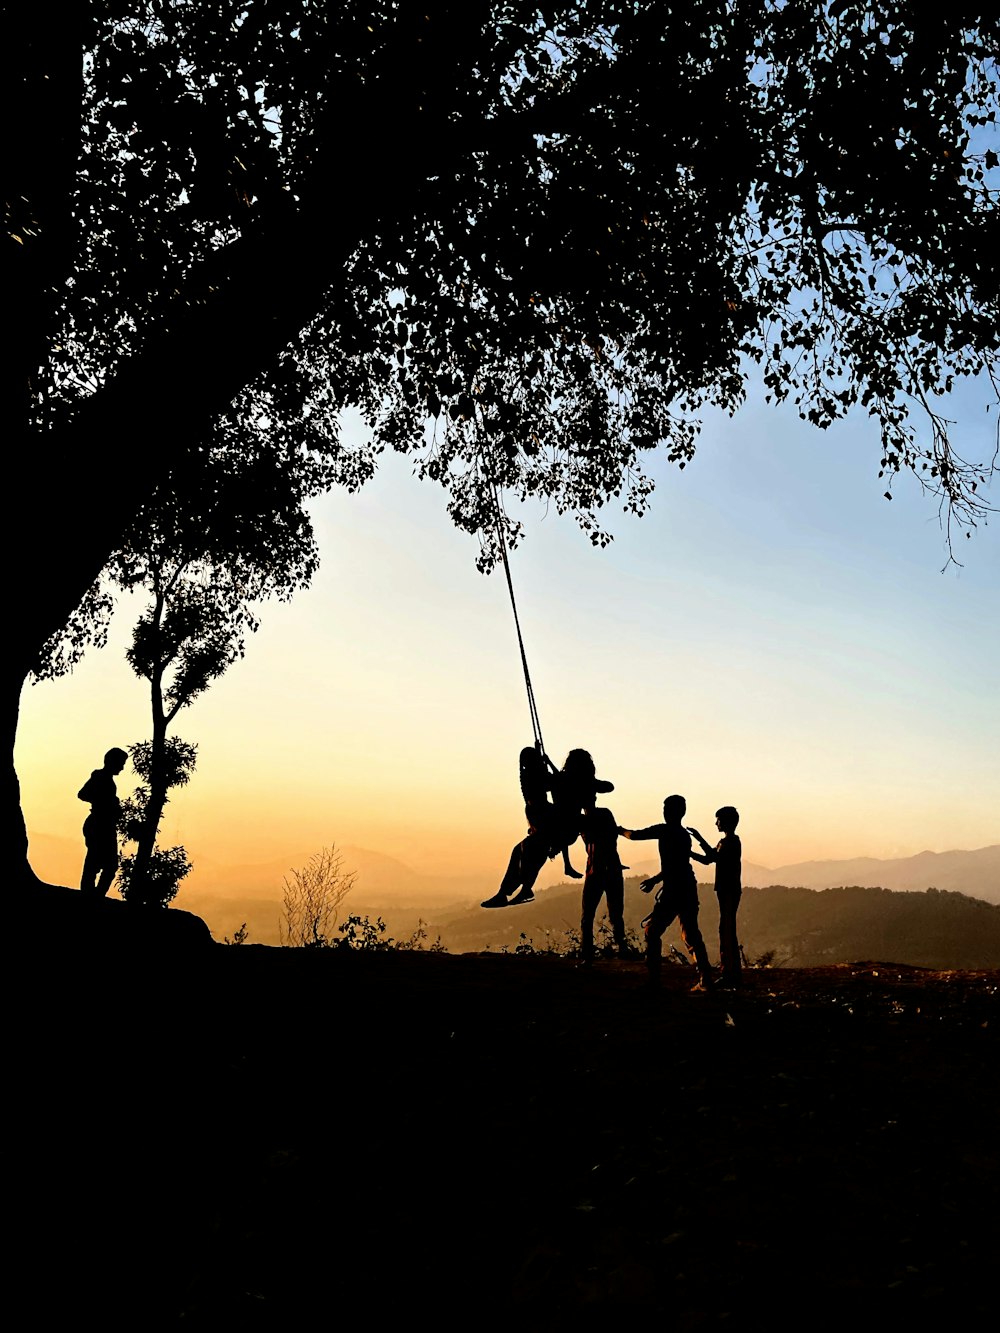 Silueta de personas en columpio bajo el árbol durante la puesta de sol